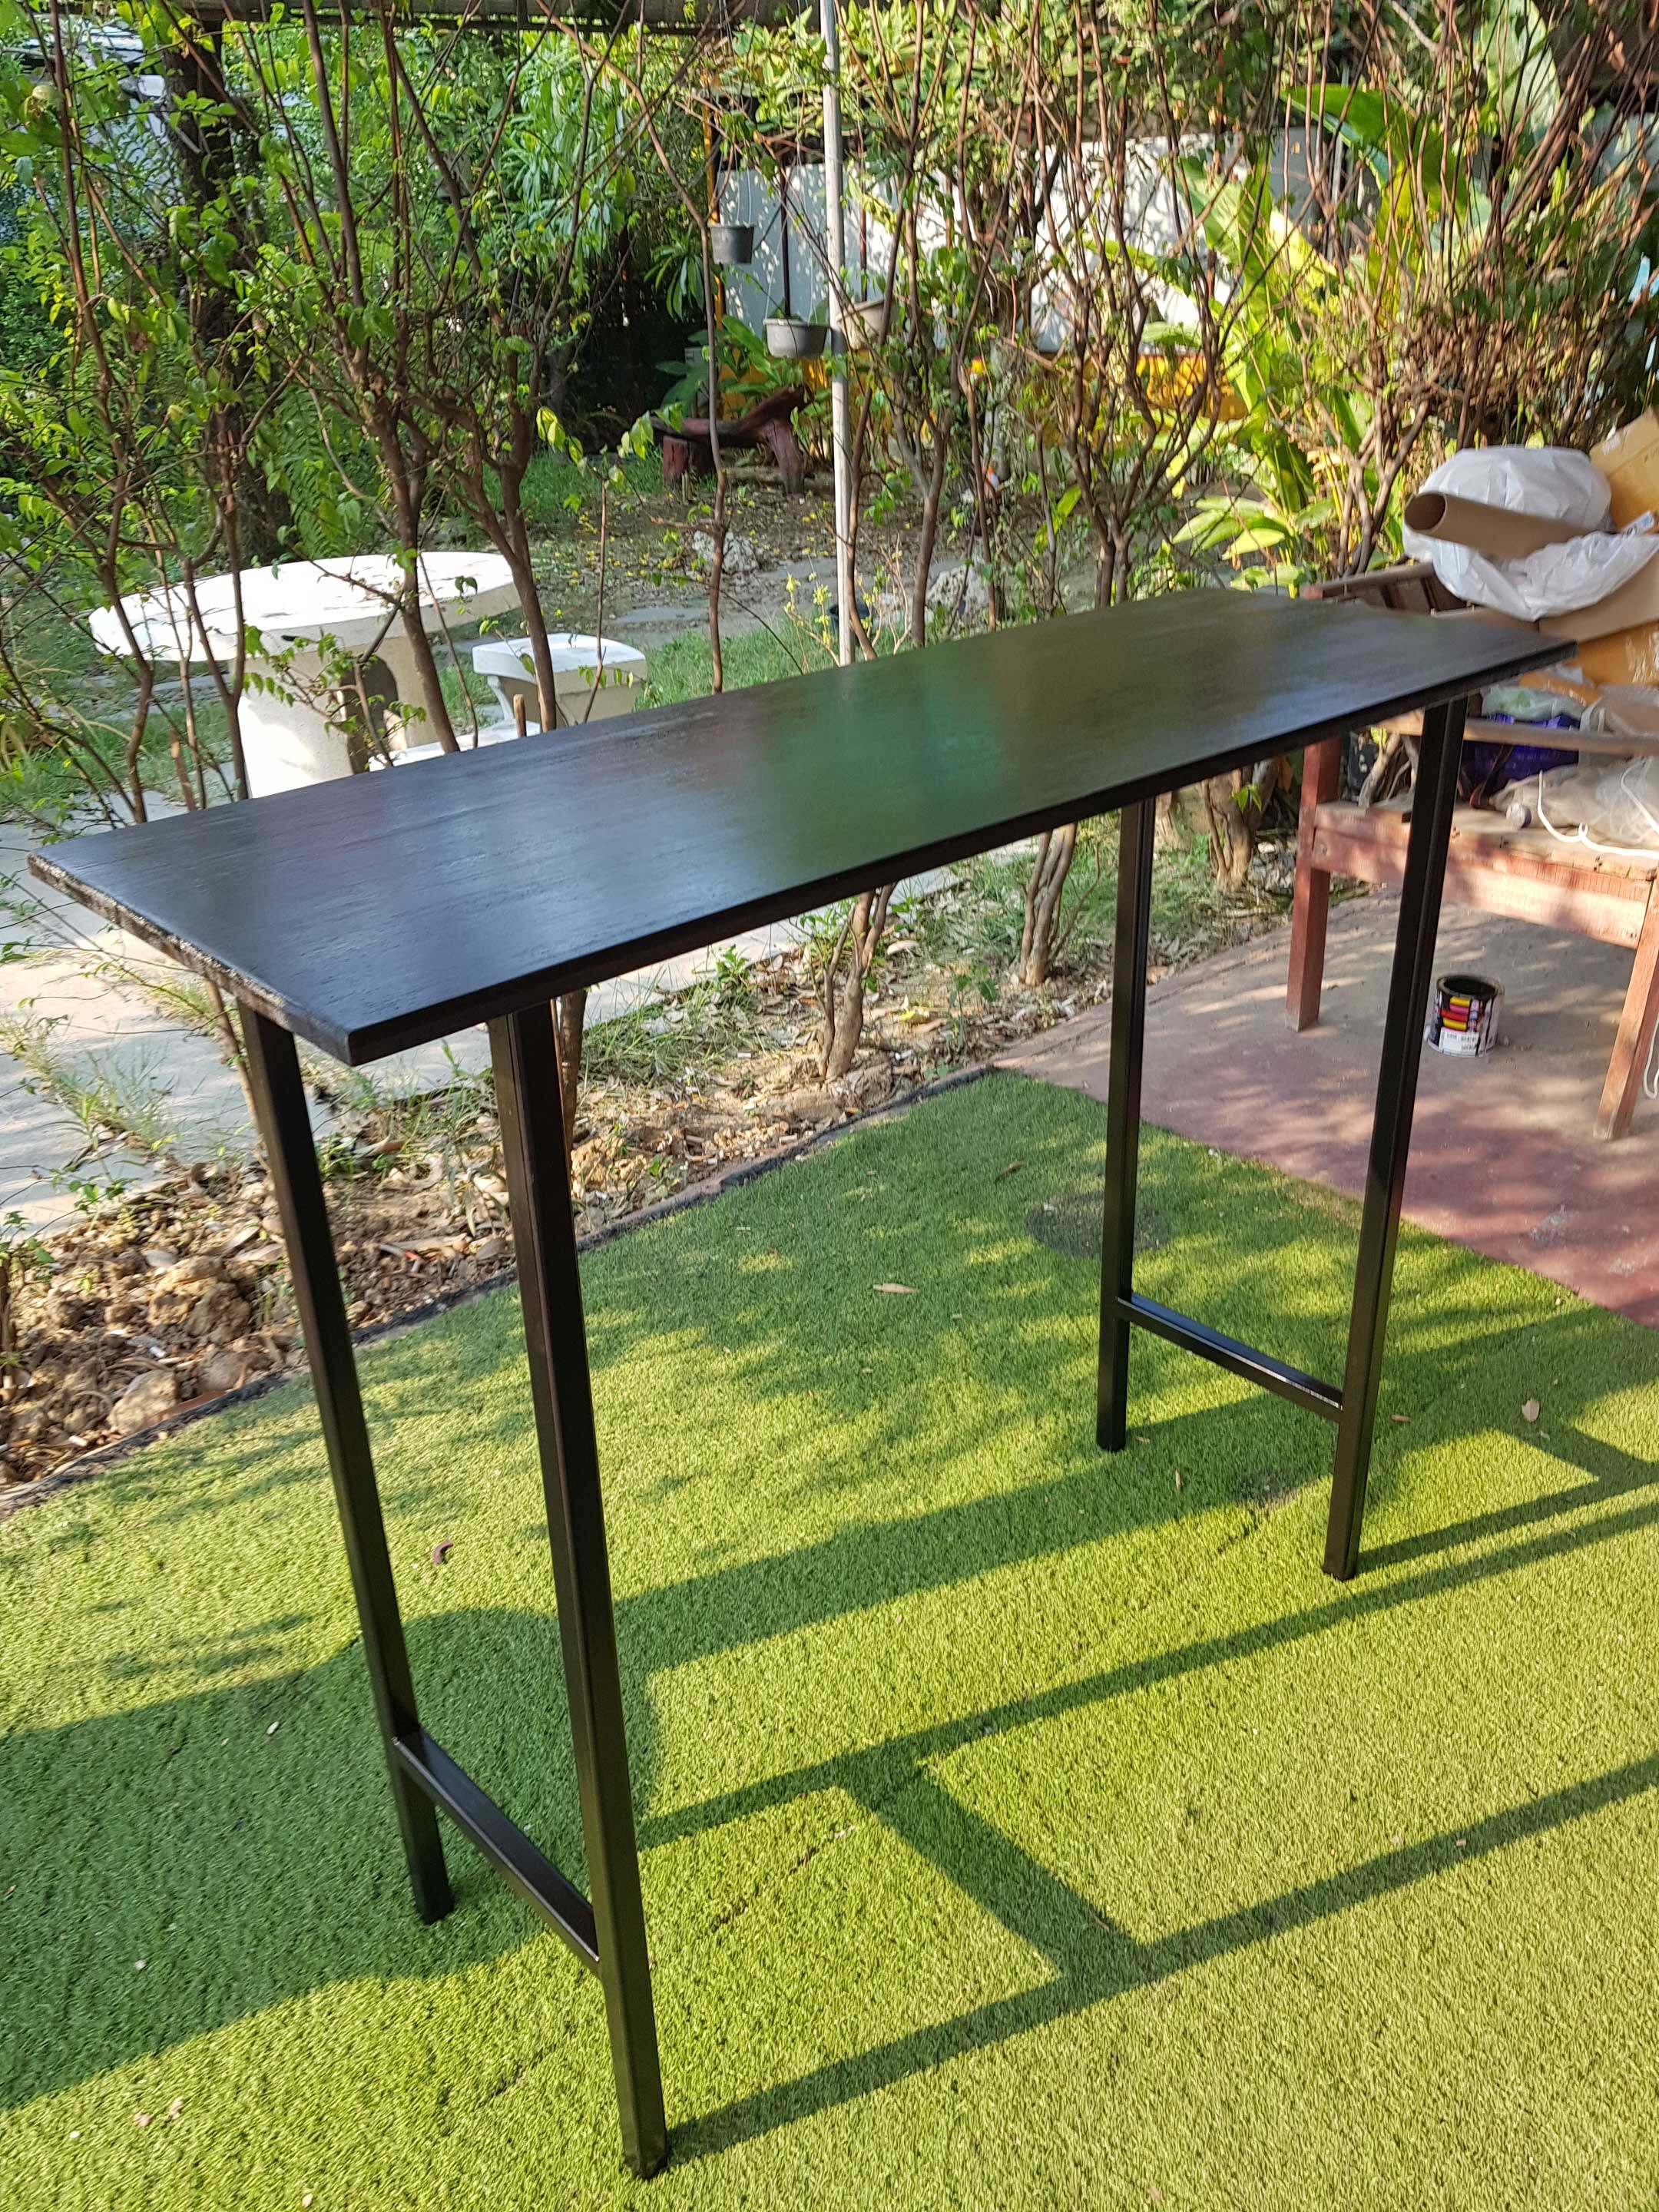 โต๊ะบาร์ไม้ยางพารา ขาเหล็ก สไตล์ลอฟท์ 40x120x100 ซม. สีโอ๊ค รุ่น TM10040120-0001-EX